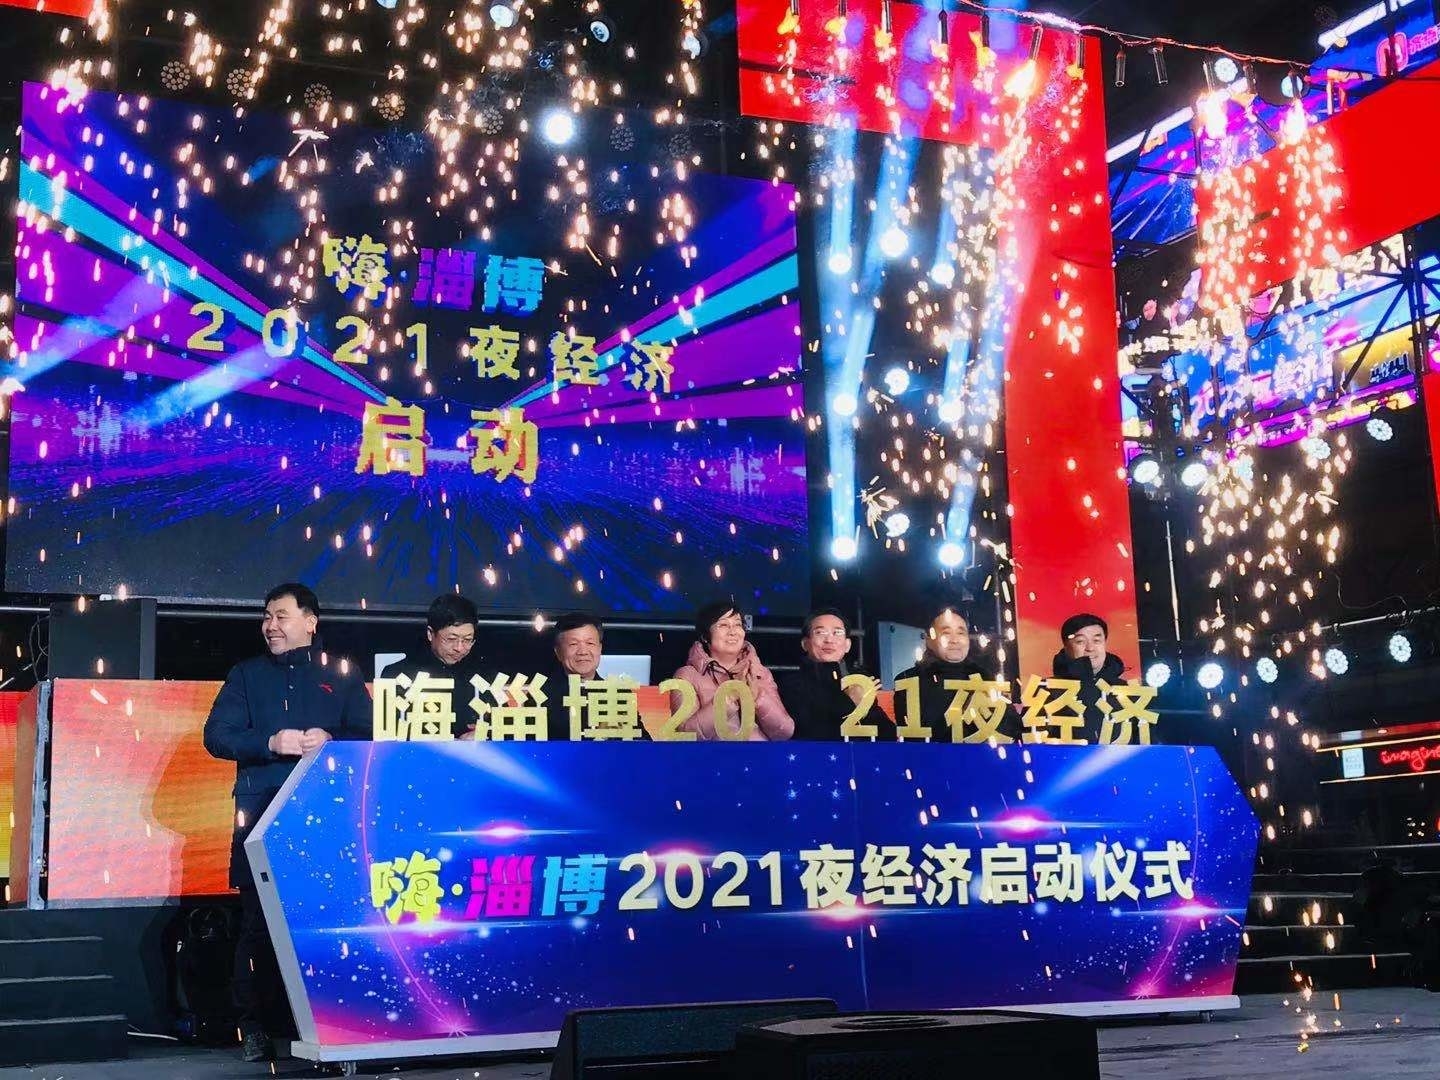 快讯 | “嗨淄博”2021夜经济启动仪式举行